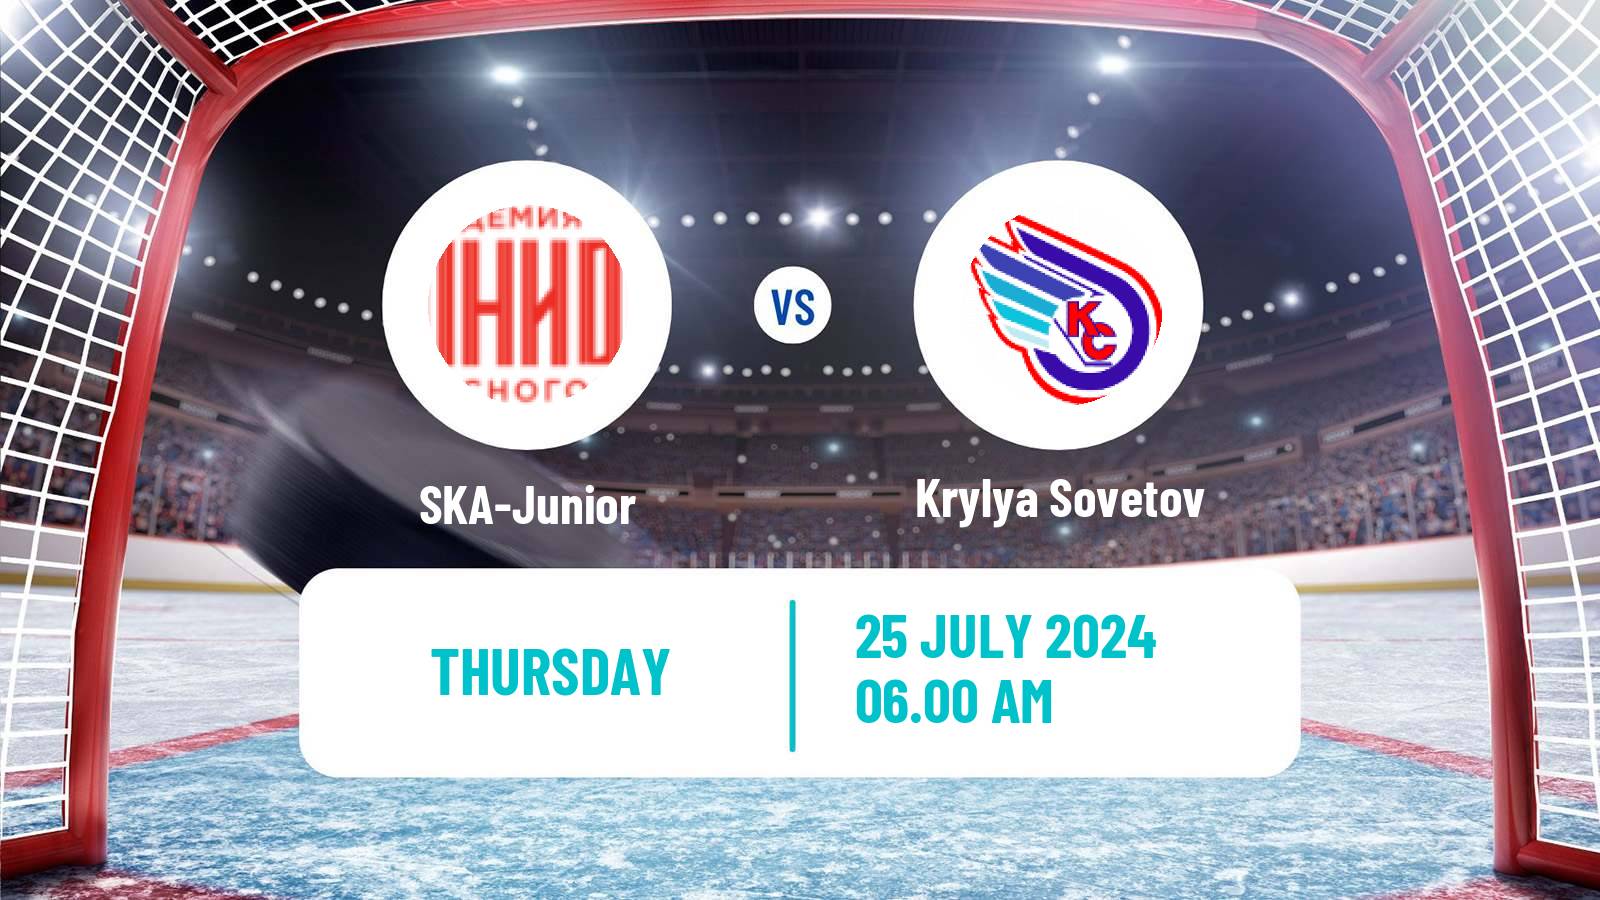 Hockey Club Friendly Ice Hockey SKA-Junior - Krylya Sovetov